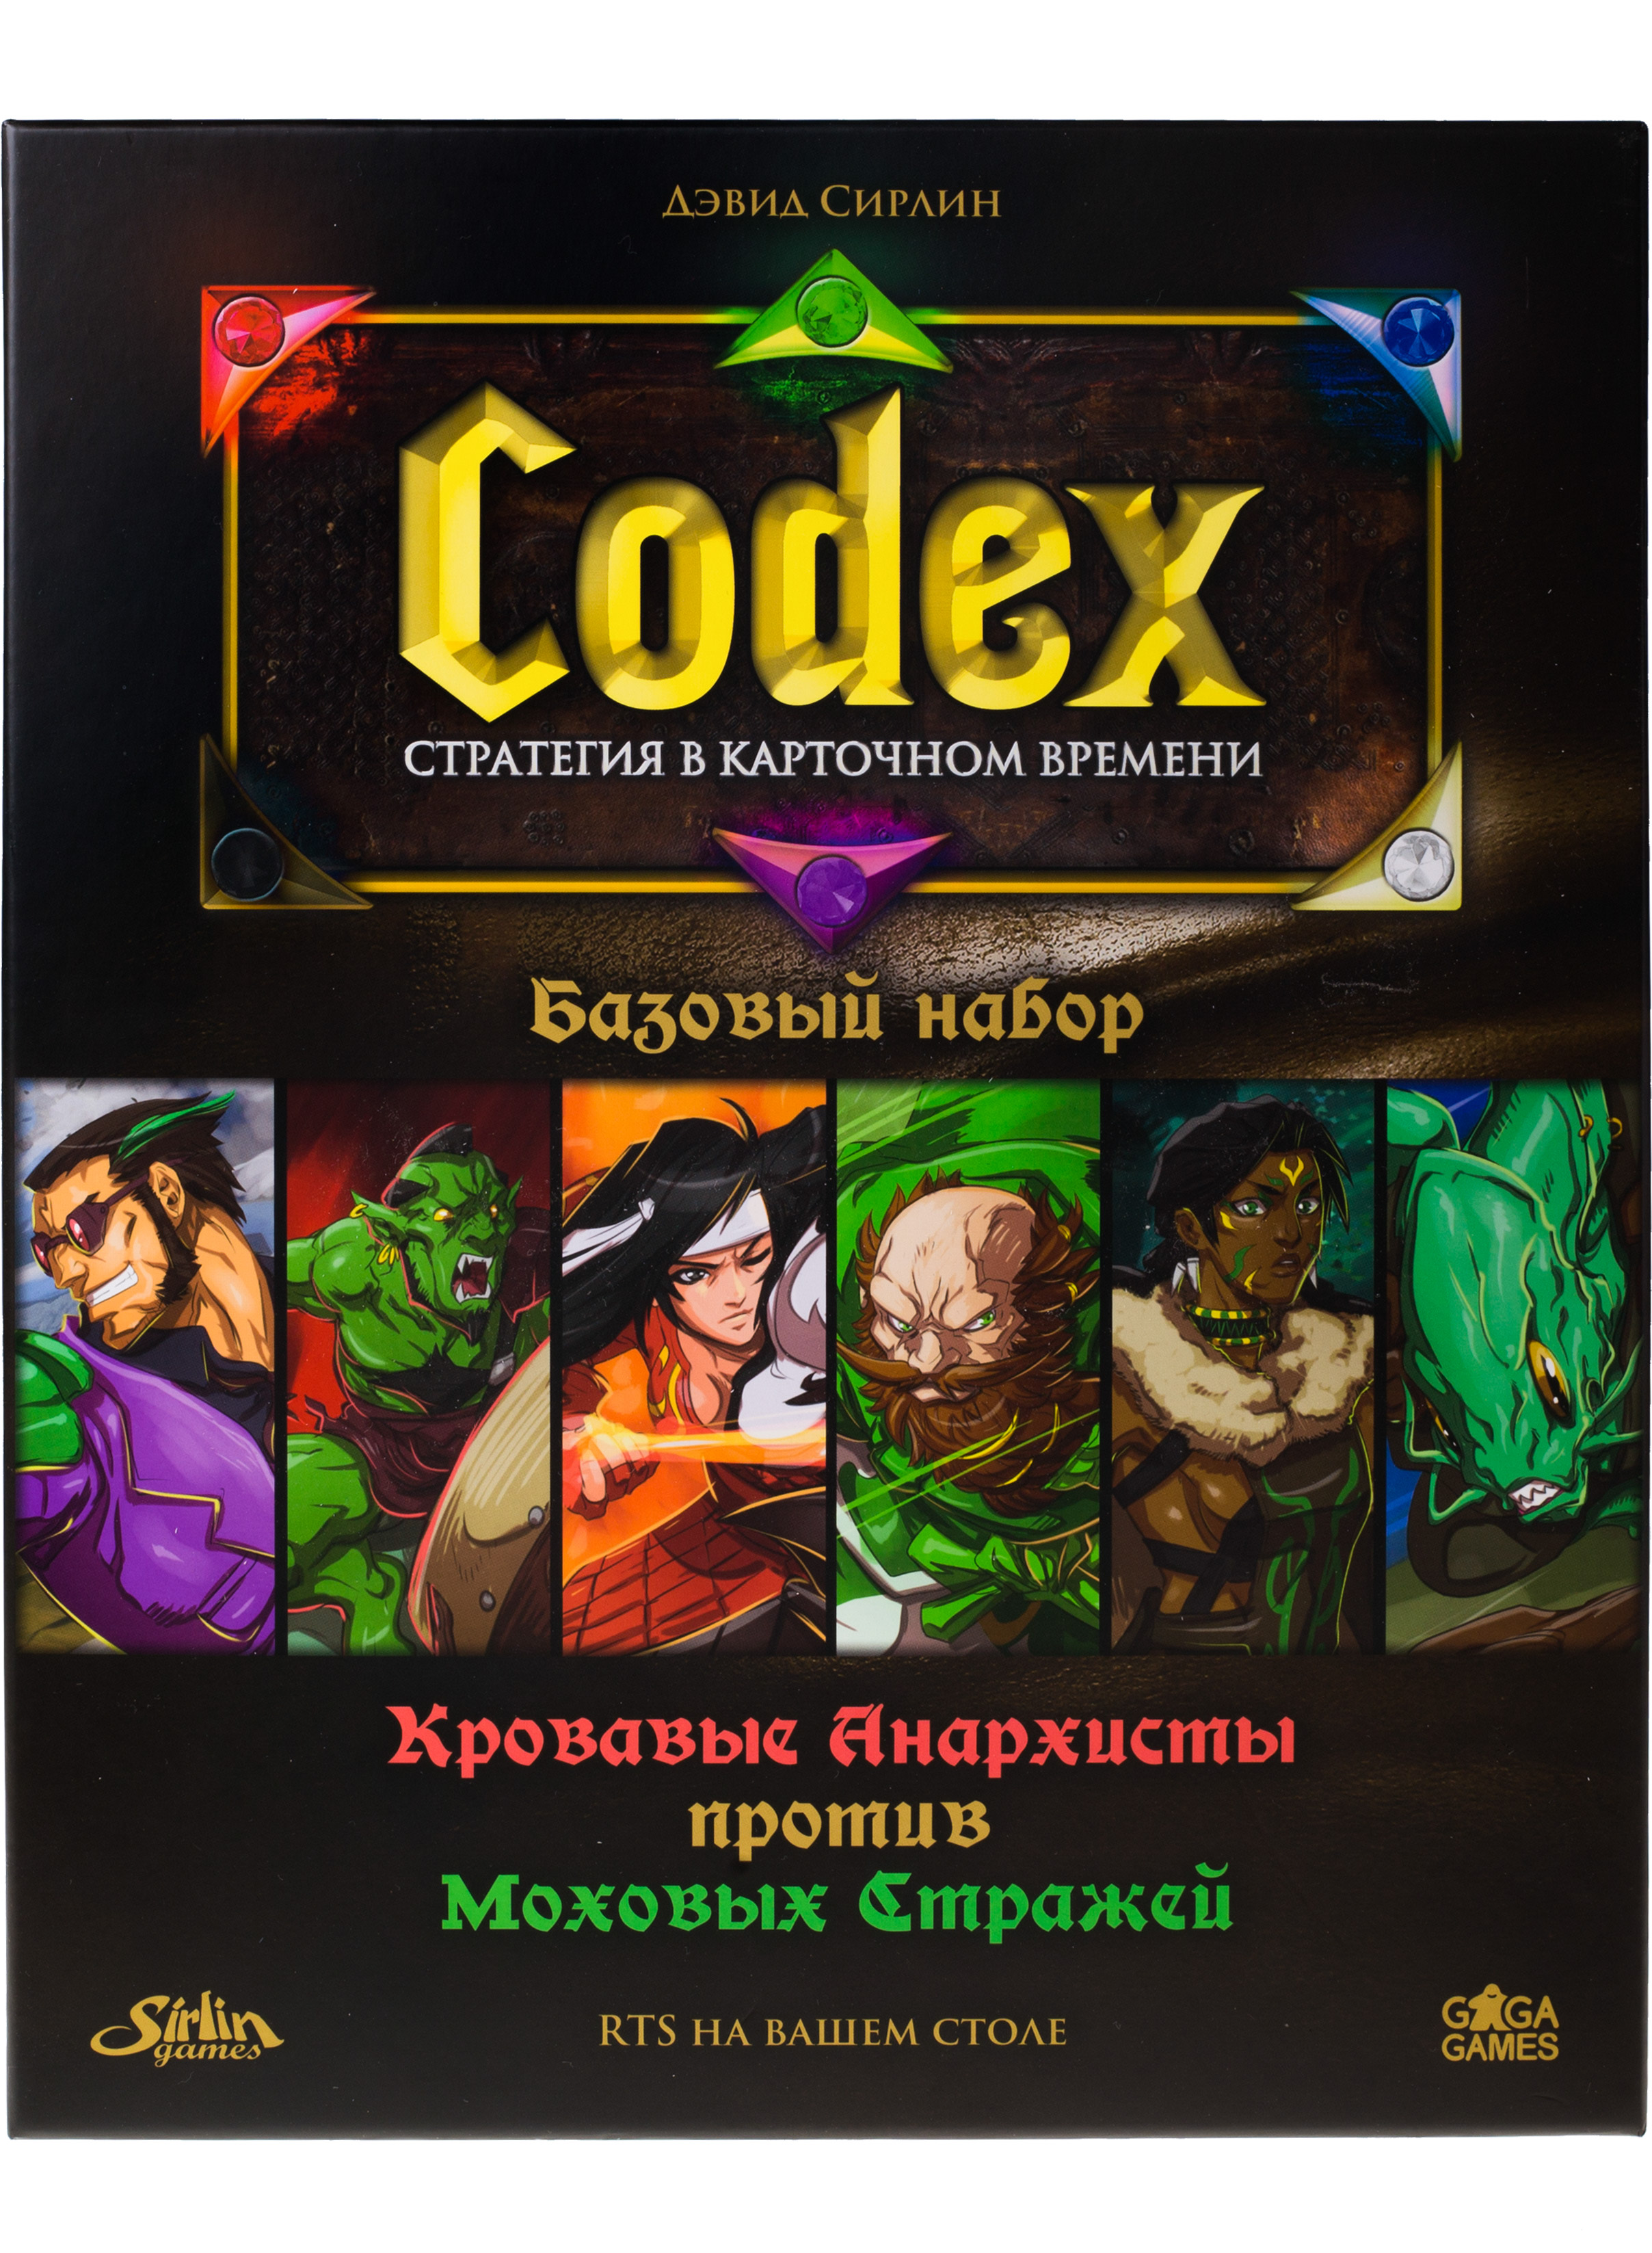 Карточная игра Gaga Games Codex базовый набор, на русском игрушка набор для боулинга monkey strike